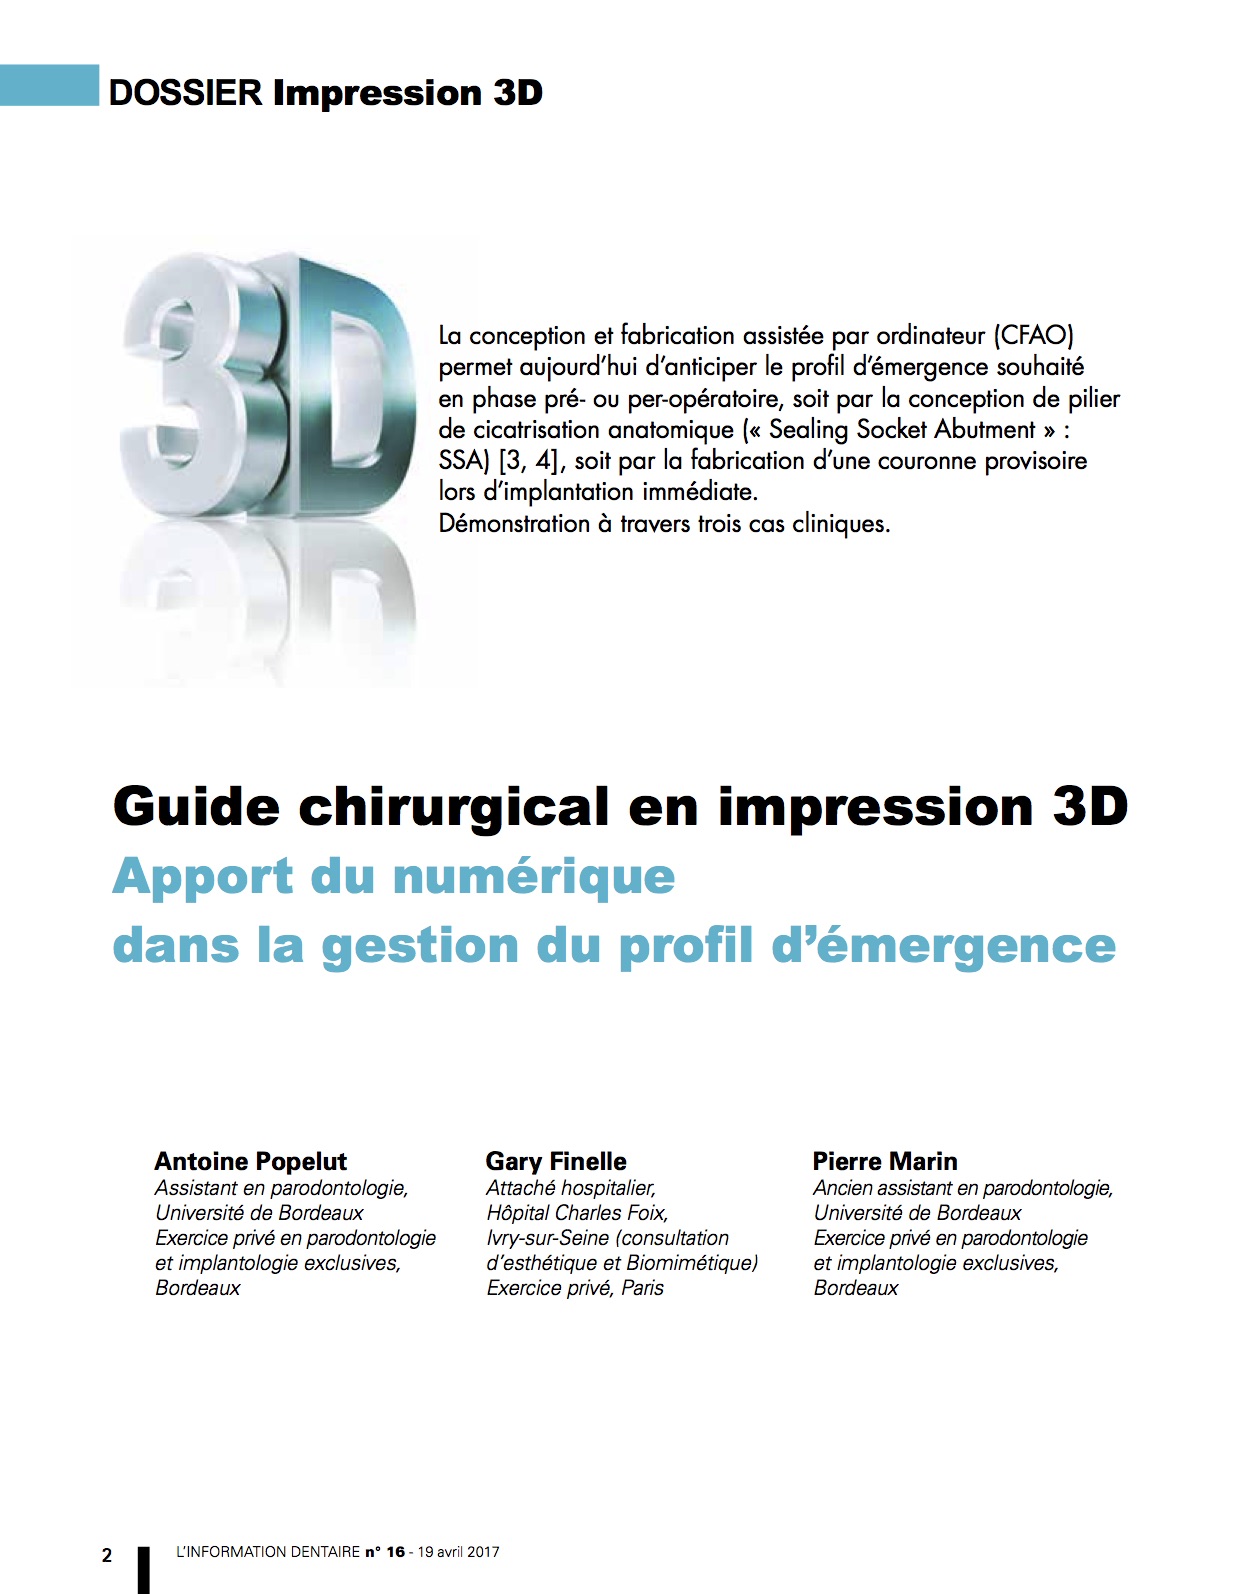 Article Guide chirurgical et impression 3D Bordeaux